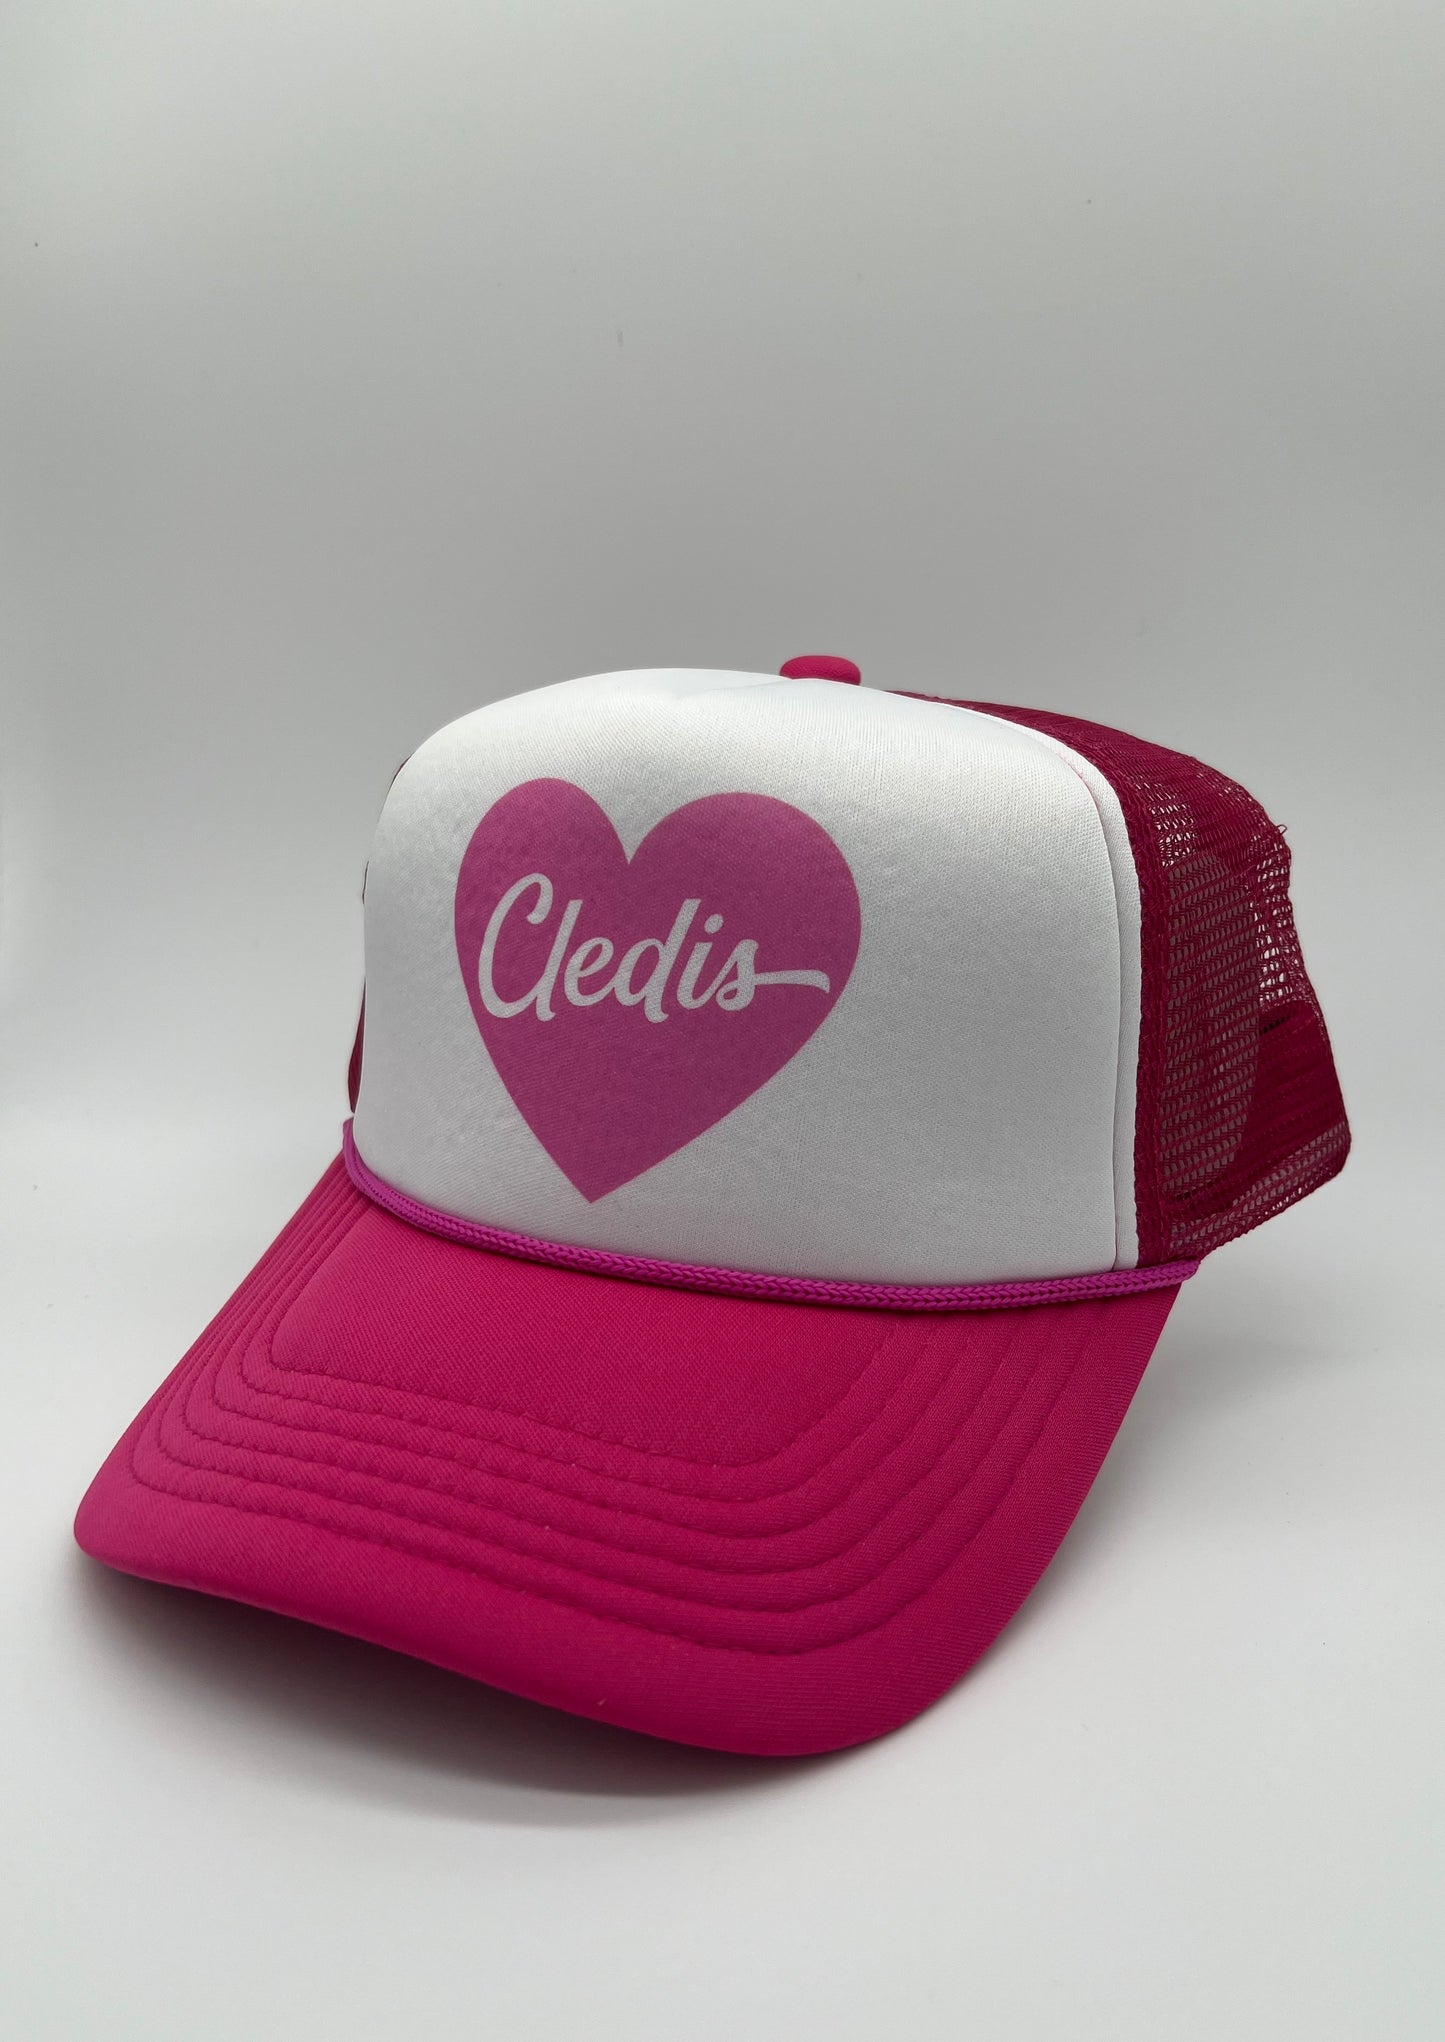 Pink Heart Cledis Trucker Hat